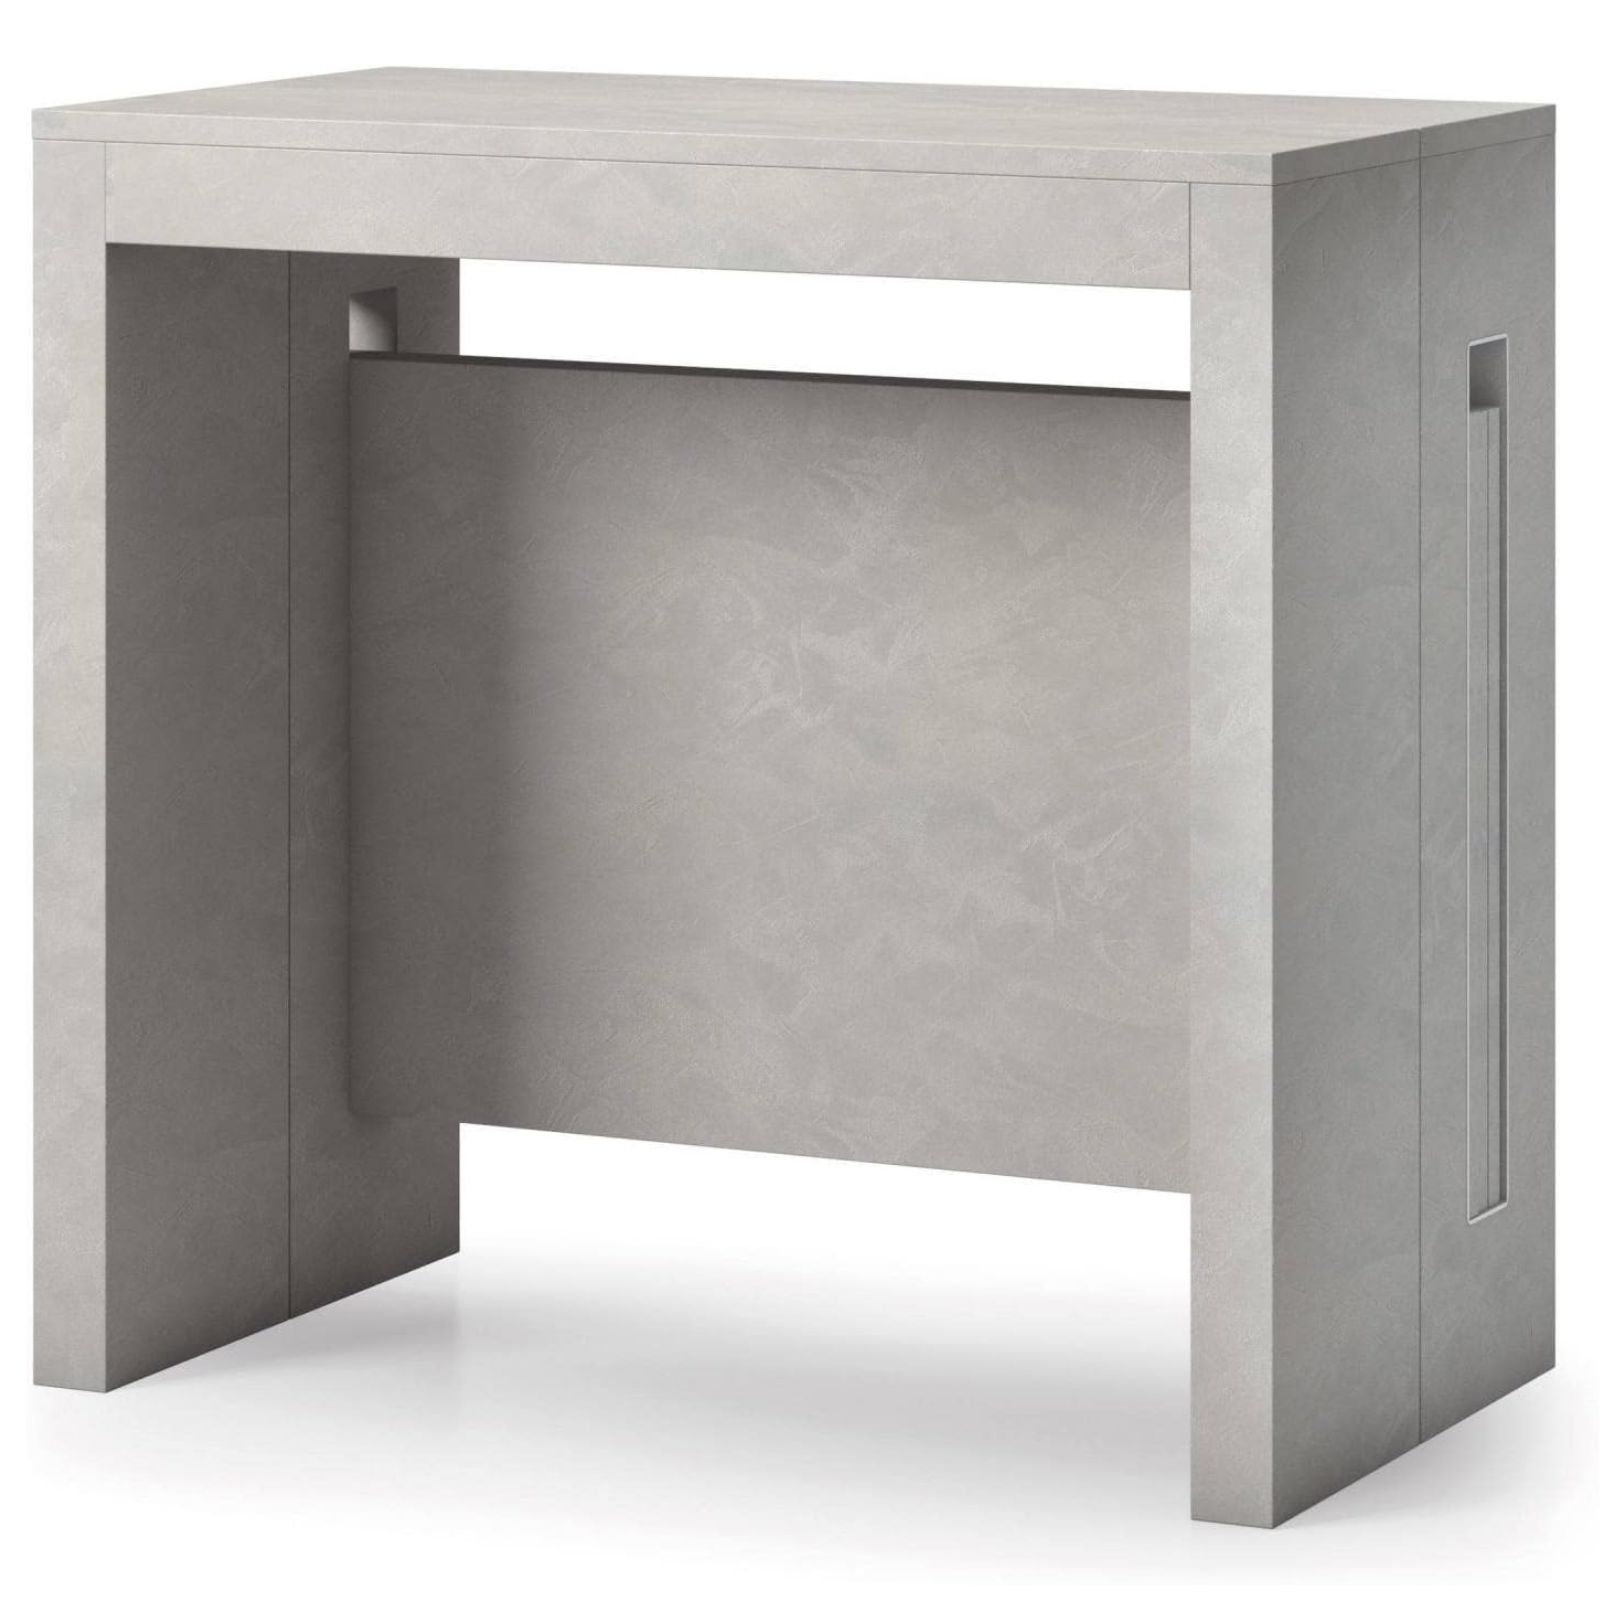 Tavolo 90x44/186 cm consolle allungabile in legno cemento design moderno - Extè Plus